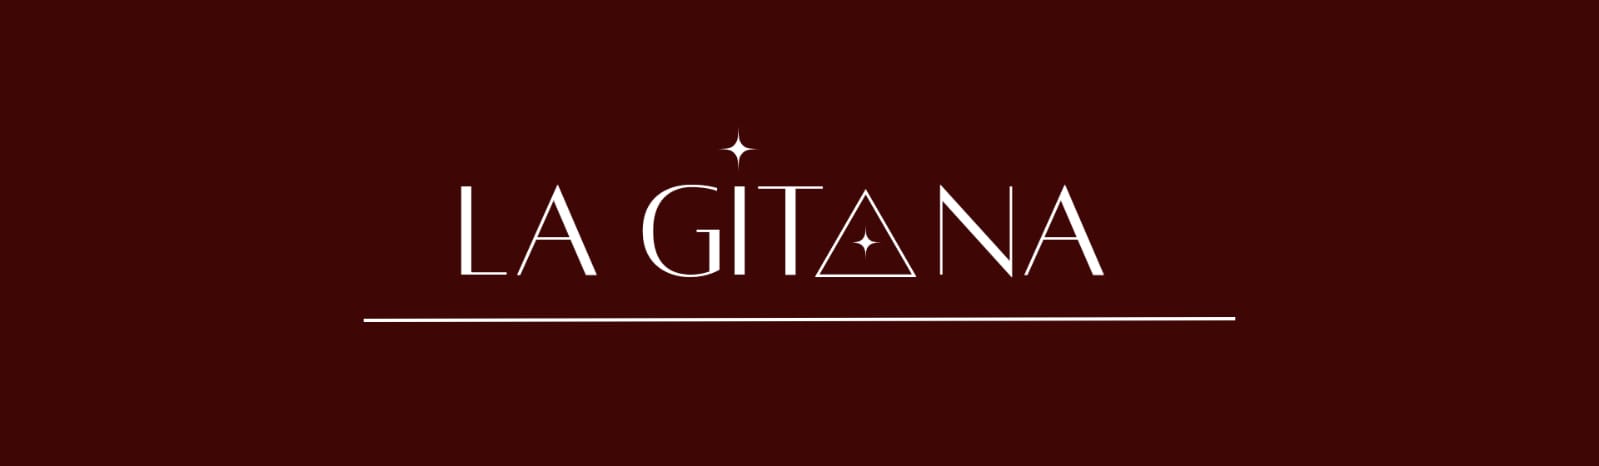 La Gitana